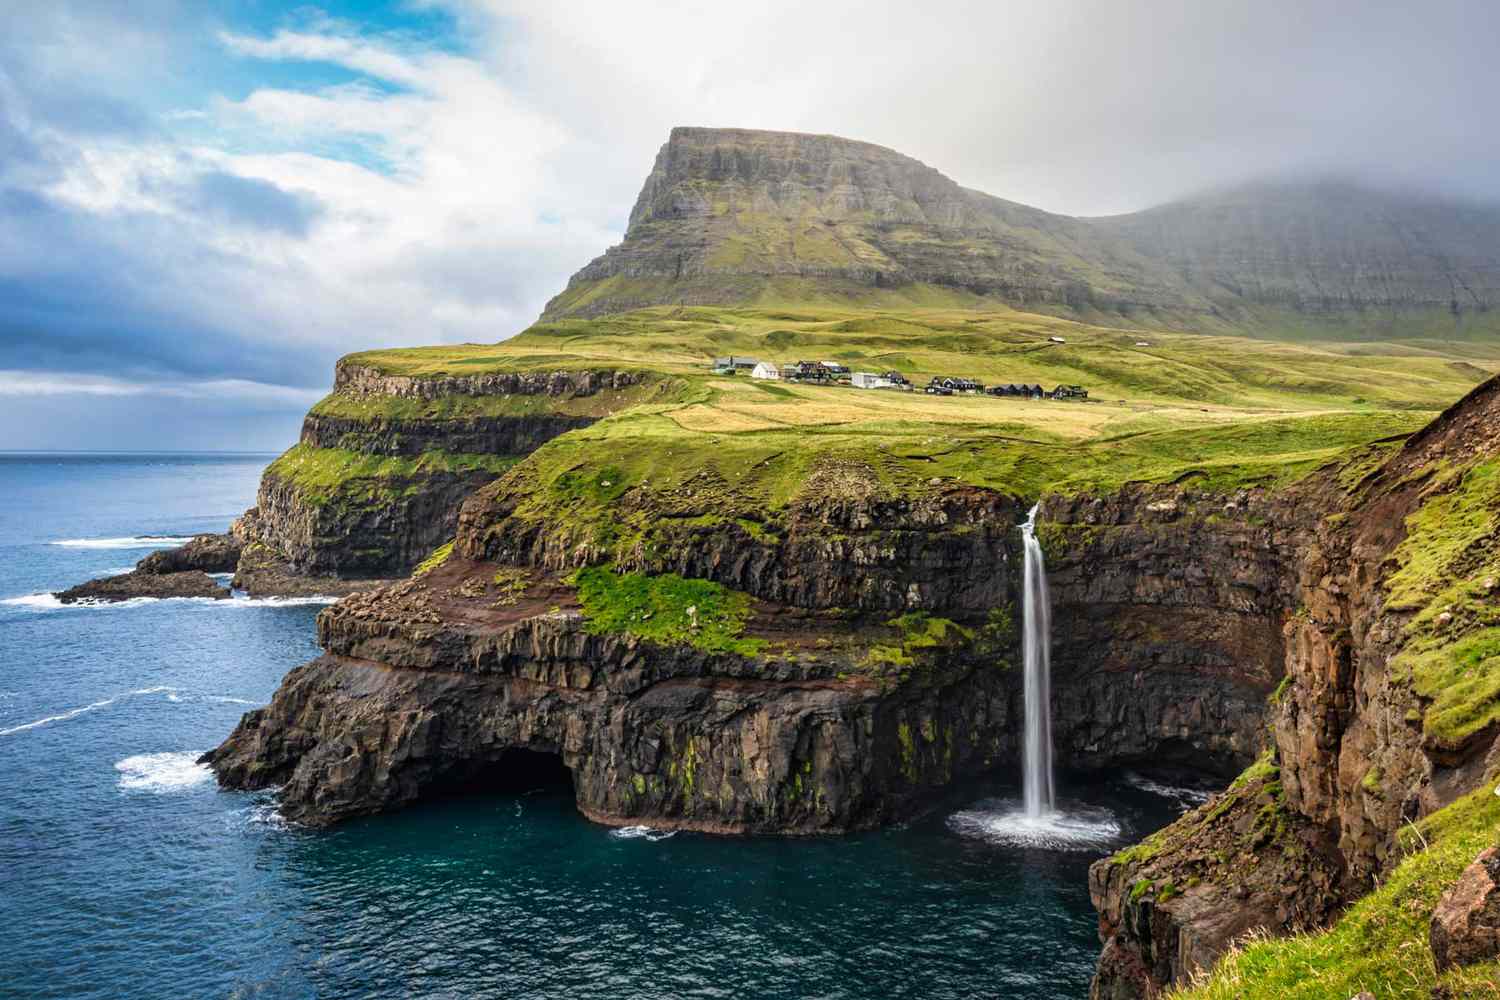 Cachoeiras se espalham pelas paisagens exuberantes das Ilhas Faroé